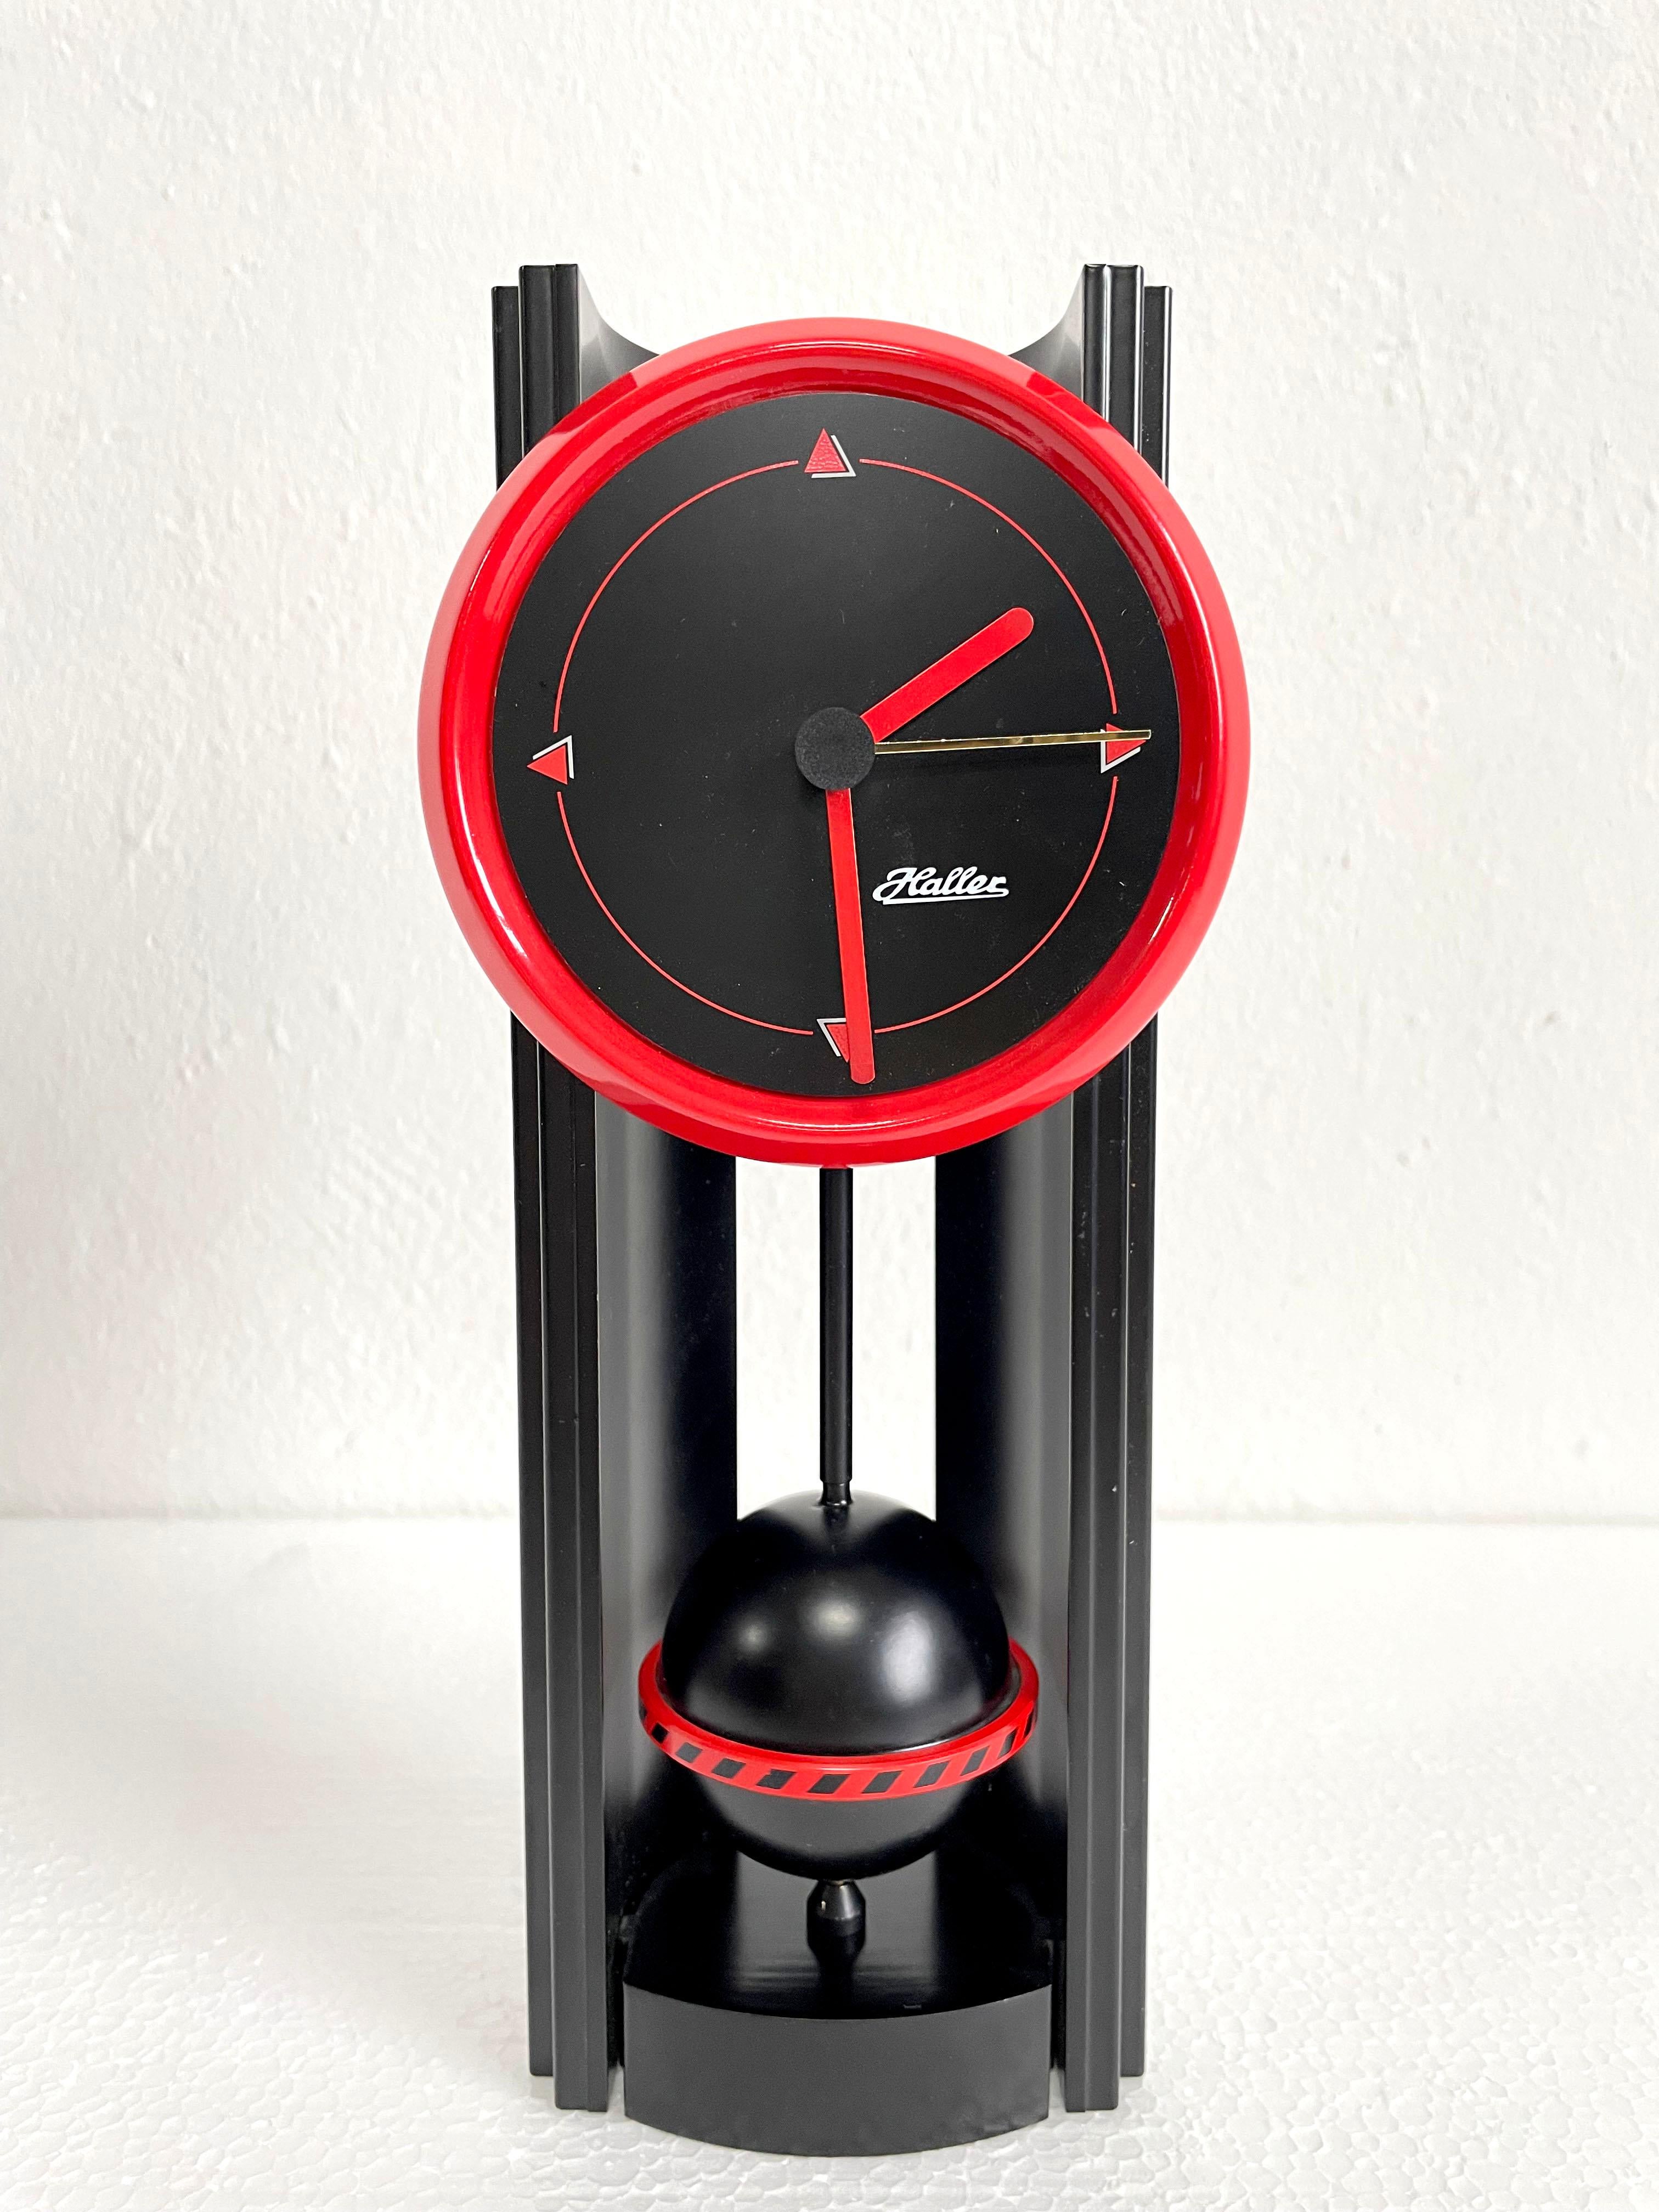 Rare horloge de table de style Memphis produite dans les années 1980 en Allemagne par Haller Clocks.

L'horloge est fabriquée en plastique noir et rouge et dispose d'un mécanisme fonctionnant avec une pile de type AA. Il est dans un état